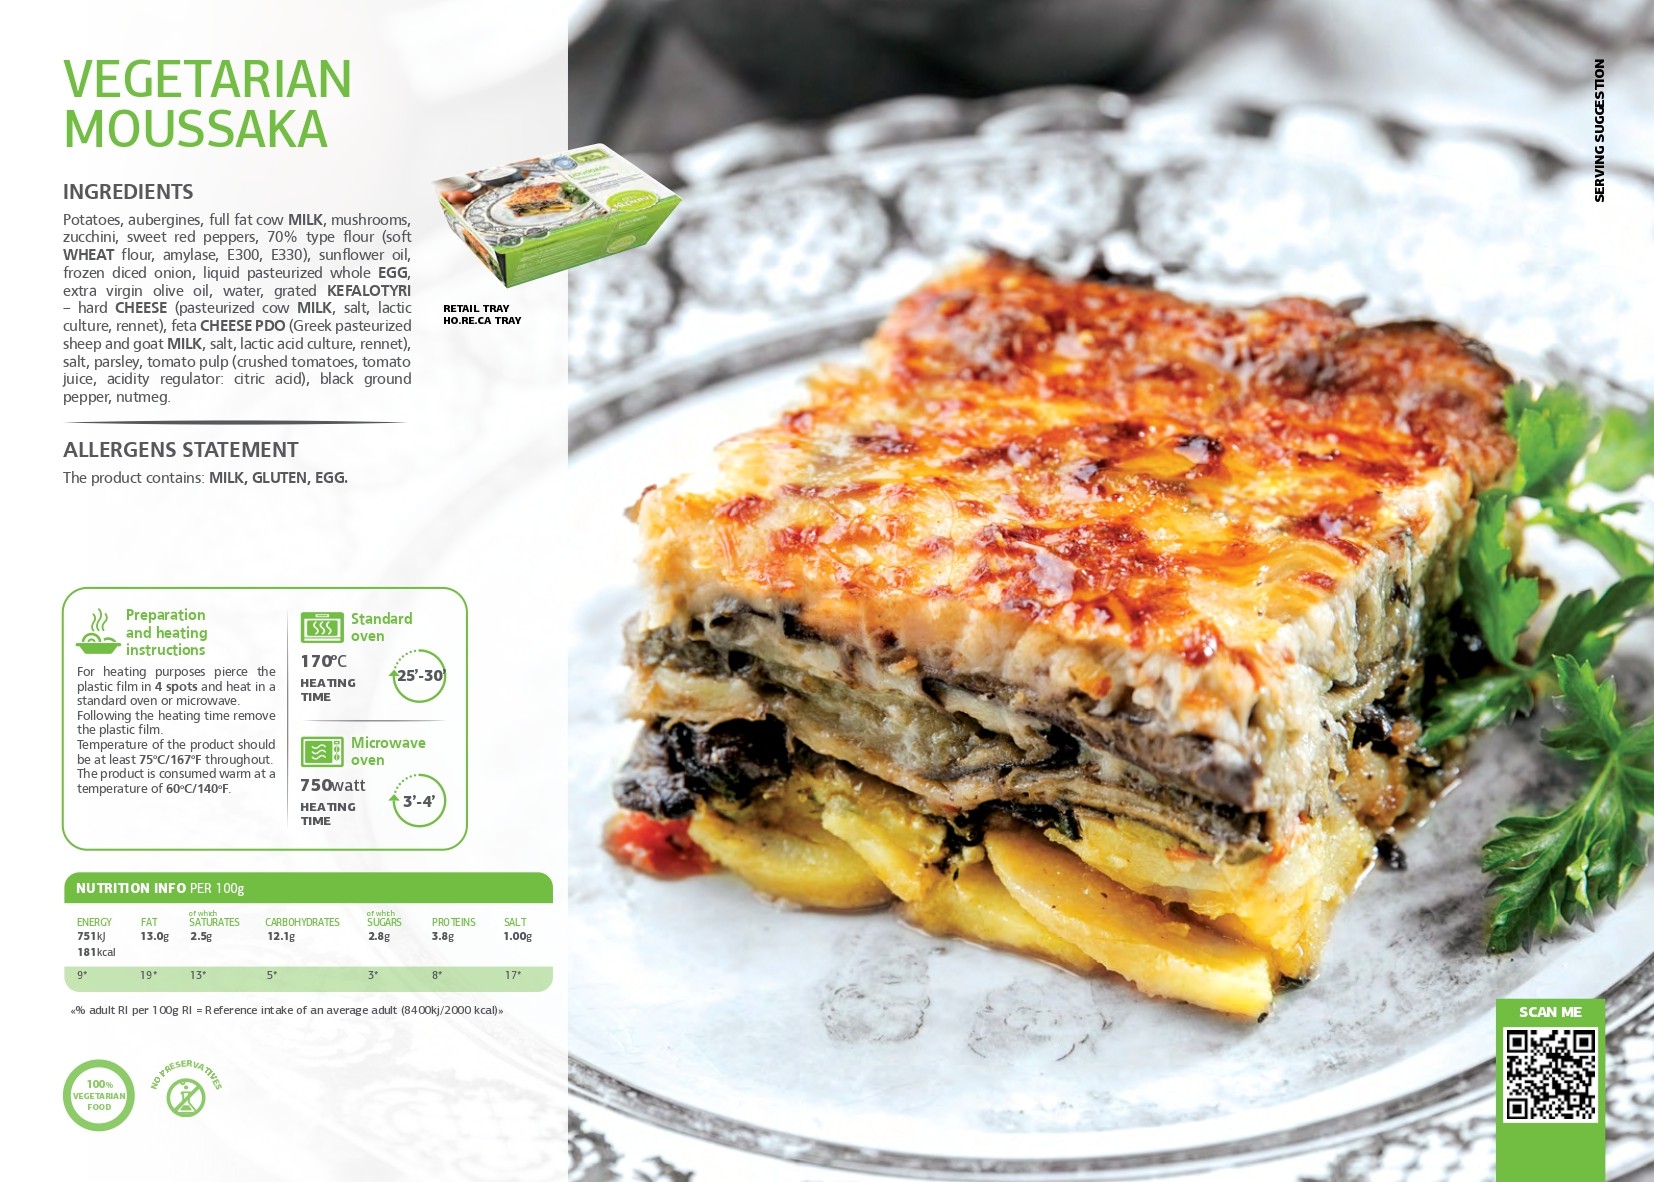 SK - Vegetarian moussaka pdf image